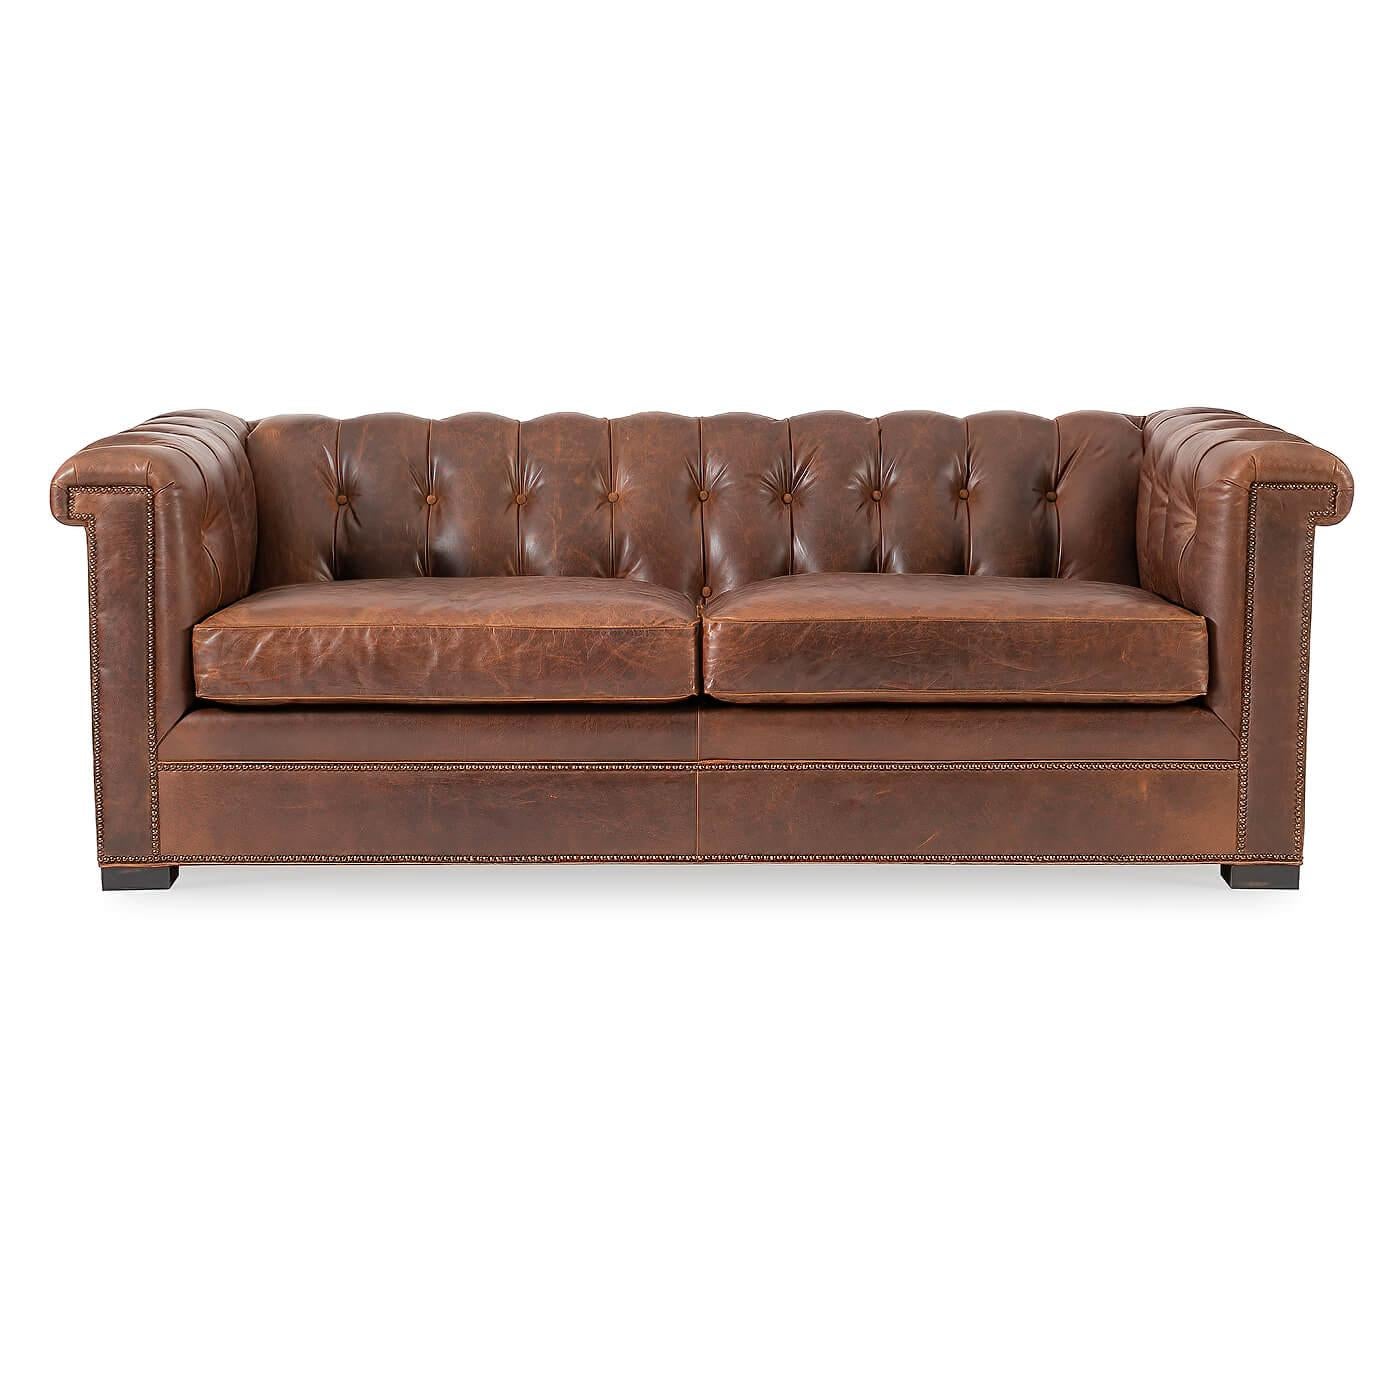 Ein modernes Chesterfield-Sofa aus Leder. Eine Interpretation des traditionellen englischen Designs aus dem 19. Jahrhundert mit quadratischen Armen und Rückenlehne. 

Die Armlehnen und die Rückenlehne sind getuftet und mit zwei bequemen